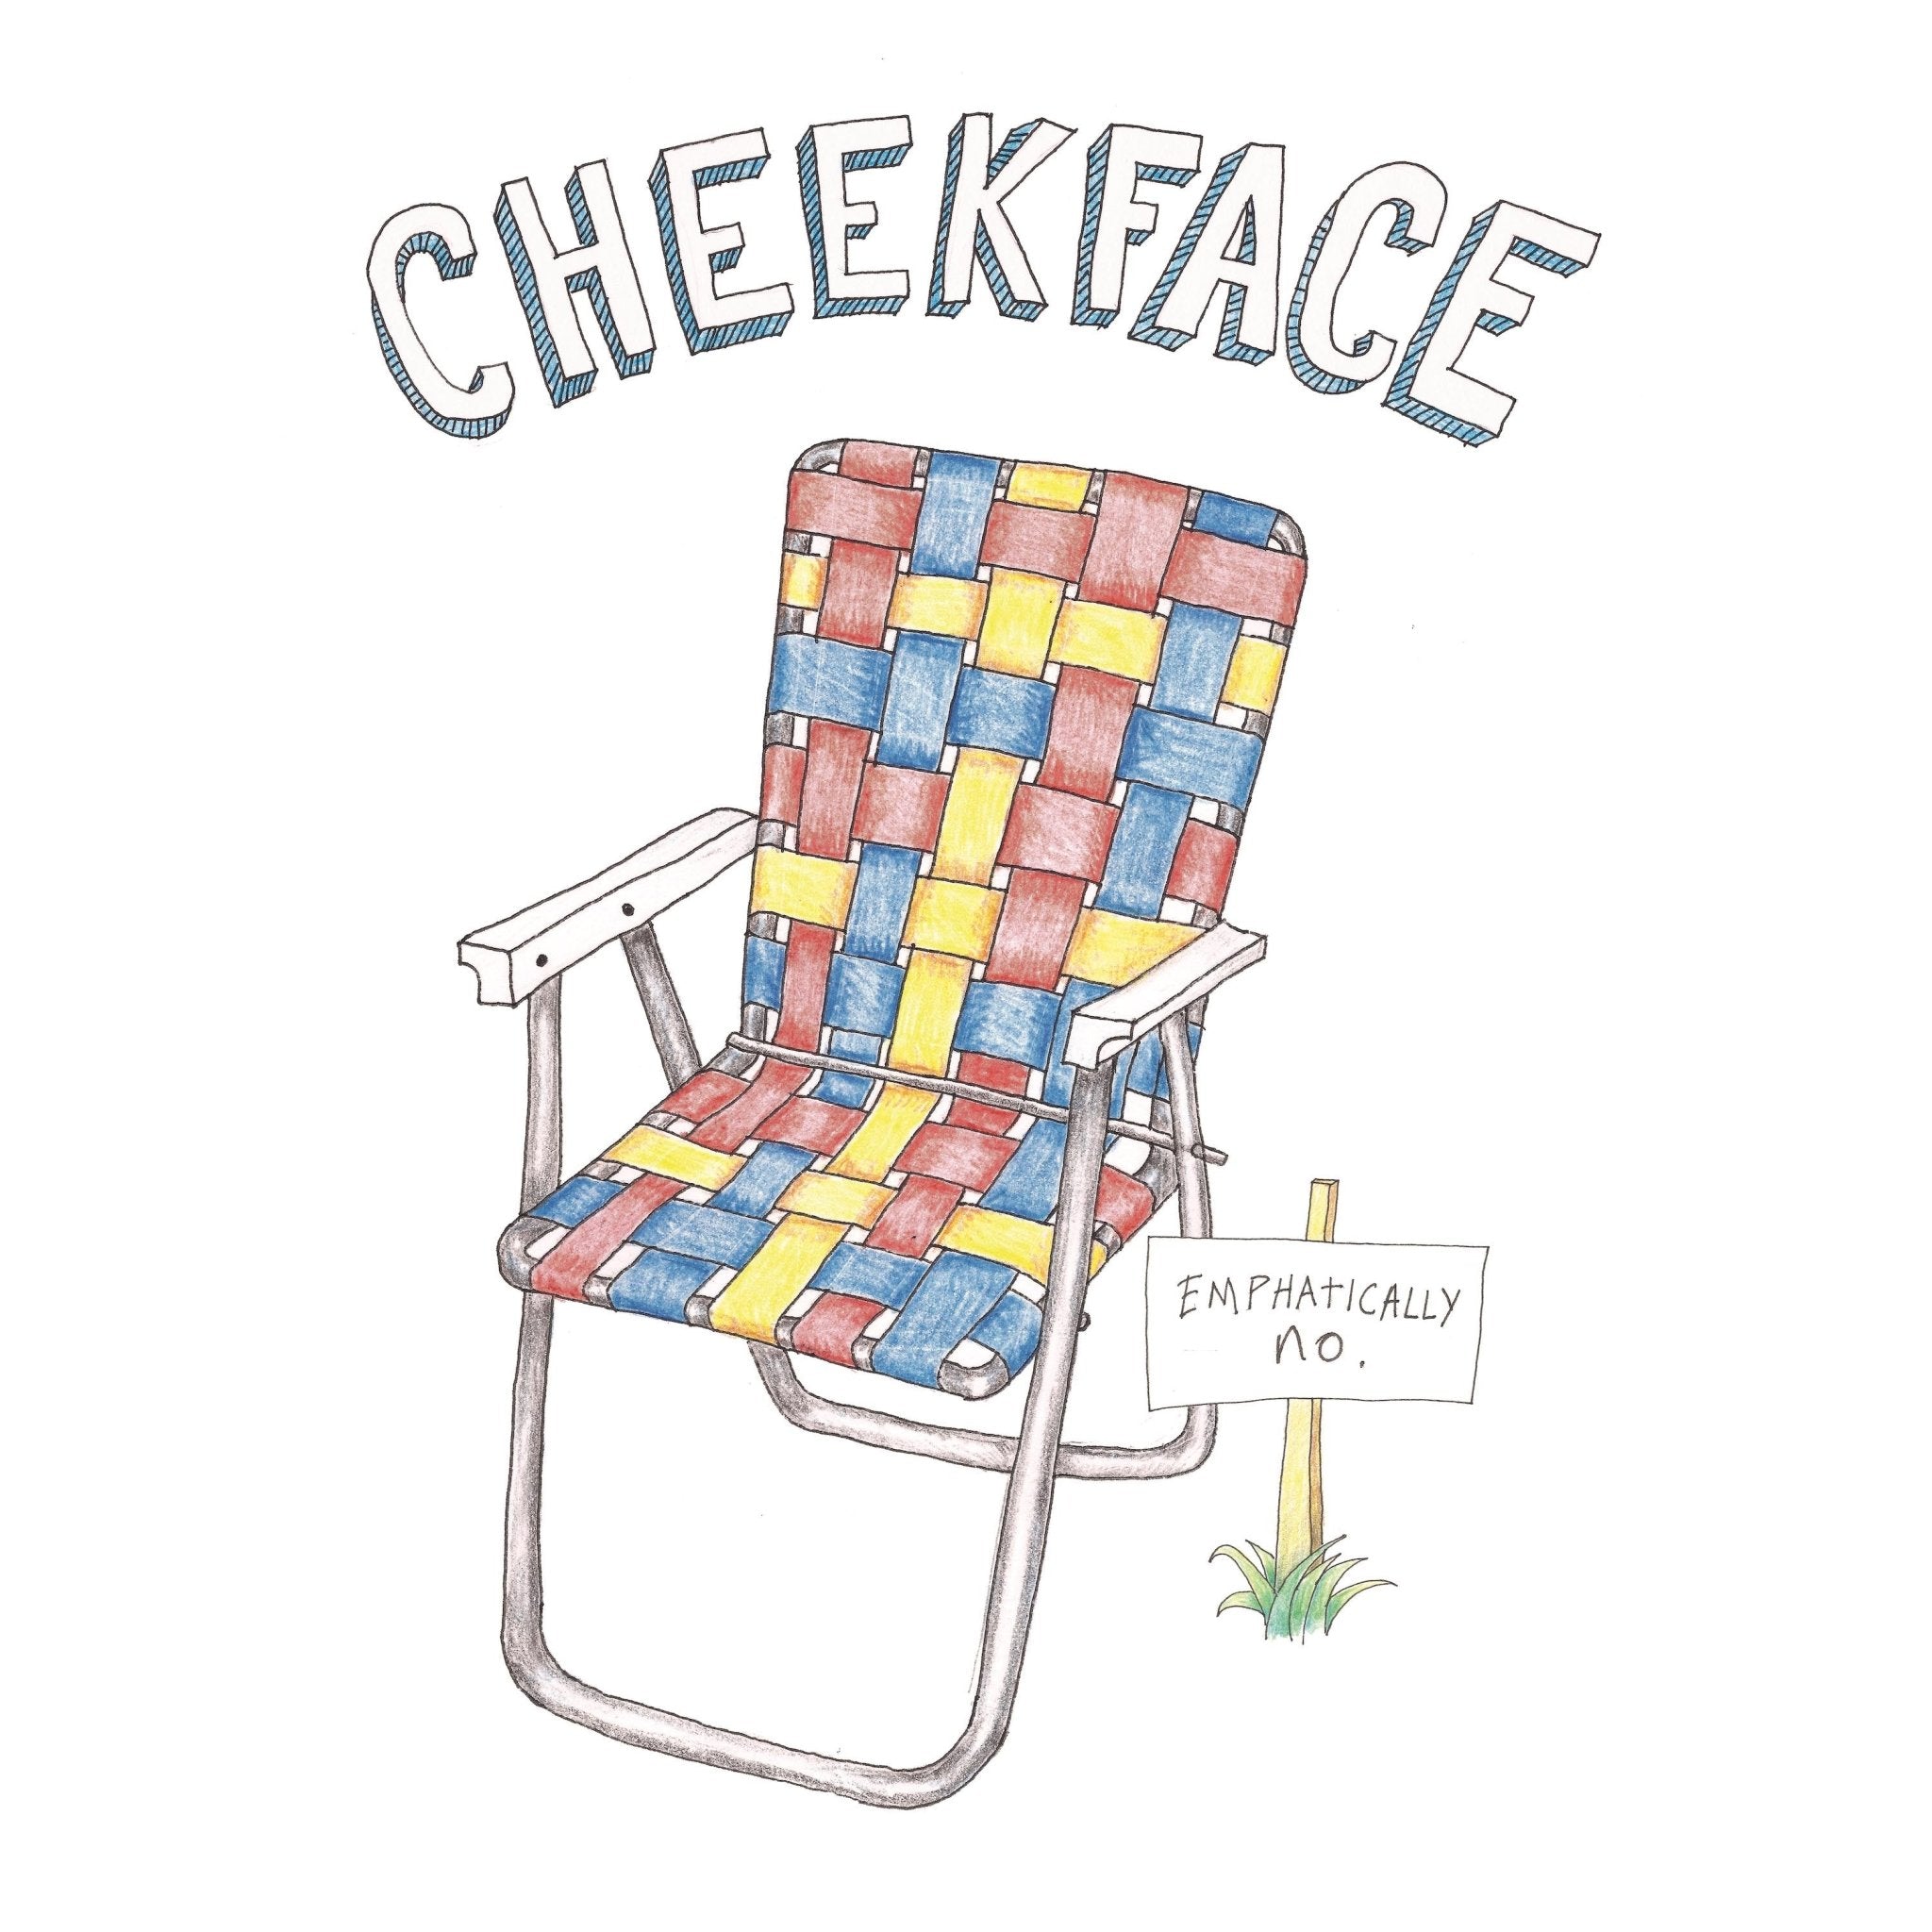 Cheekface - Emphatically No. LP - Vinyl - New Professor Music